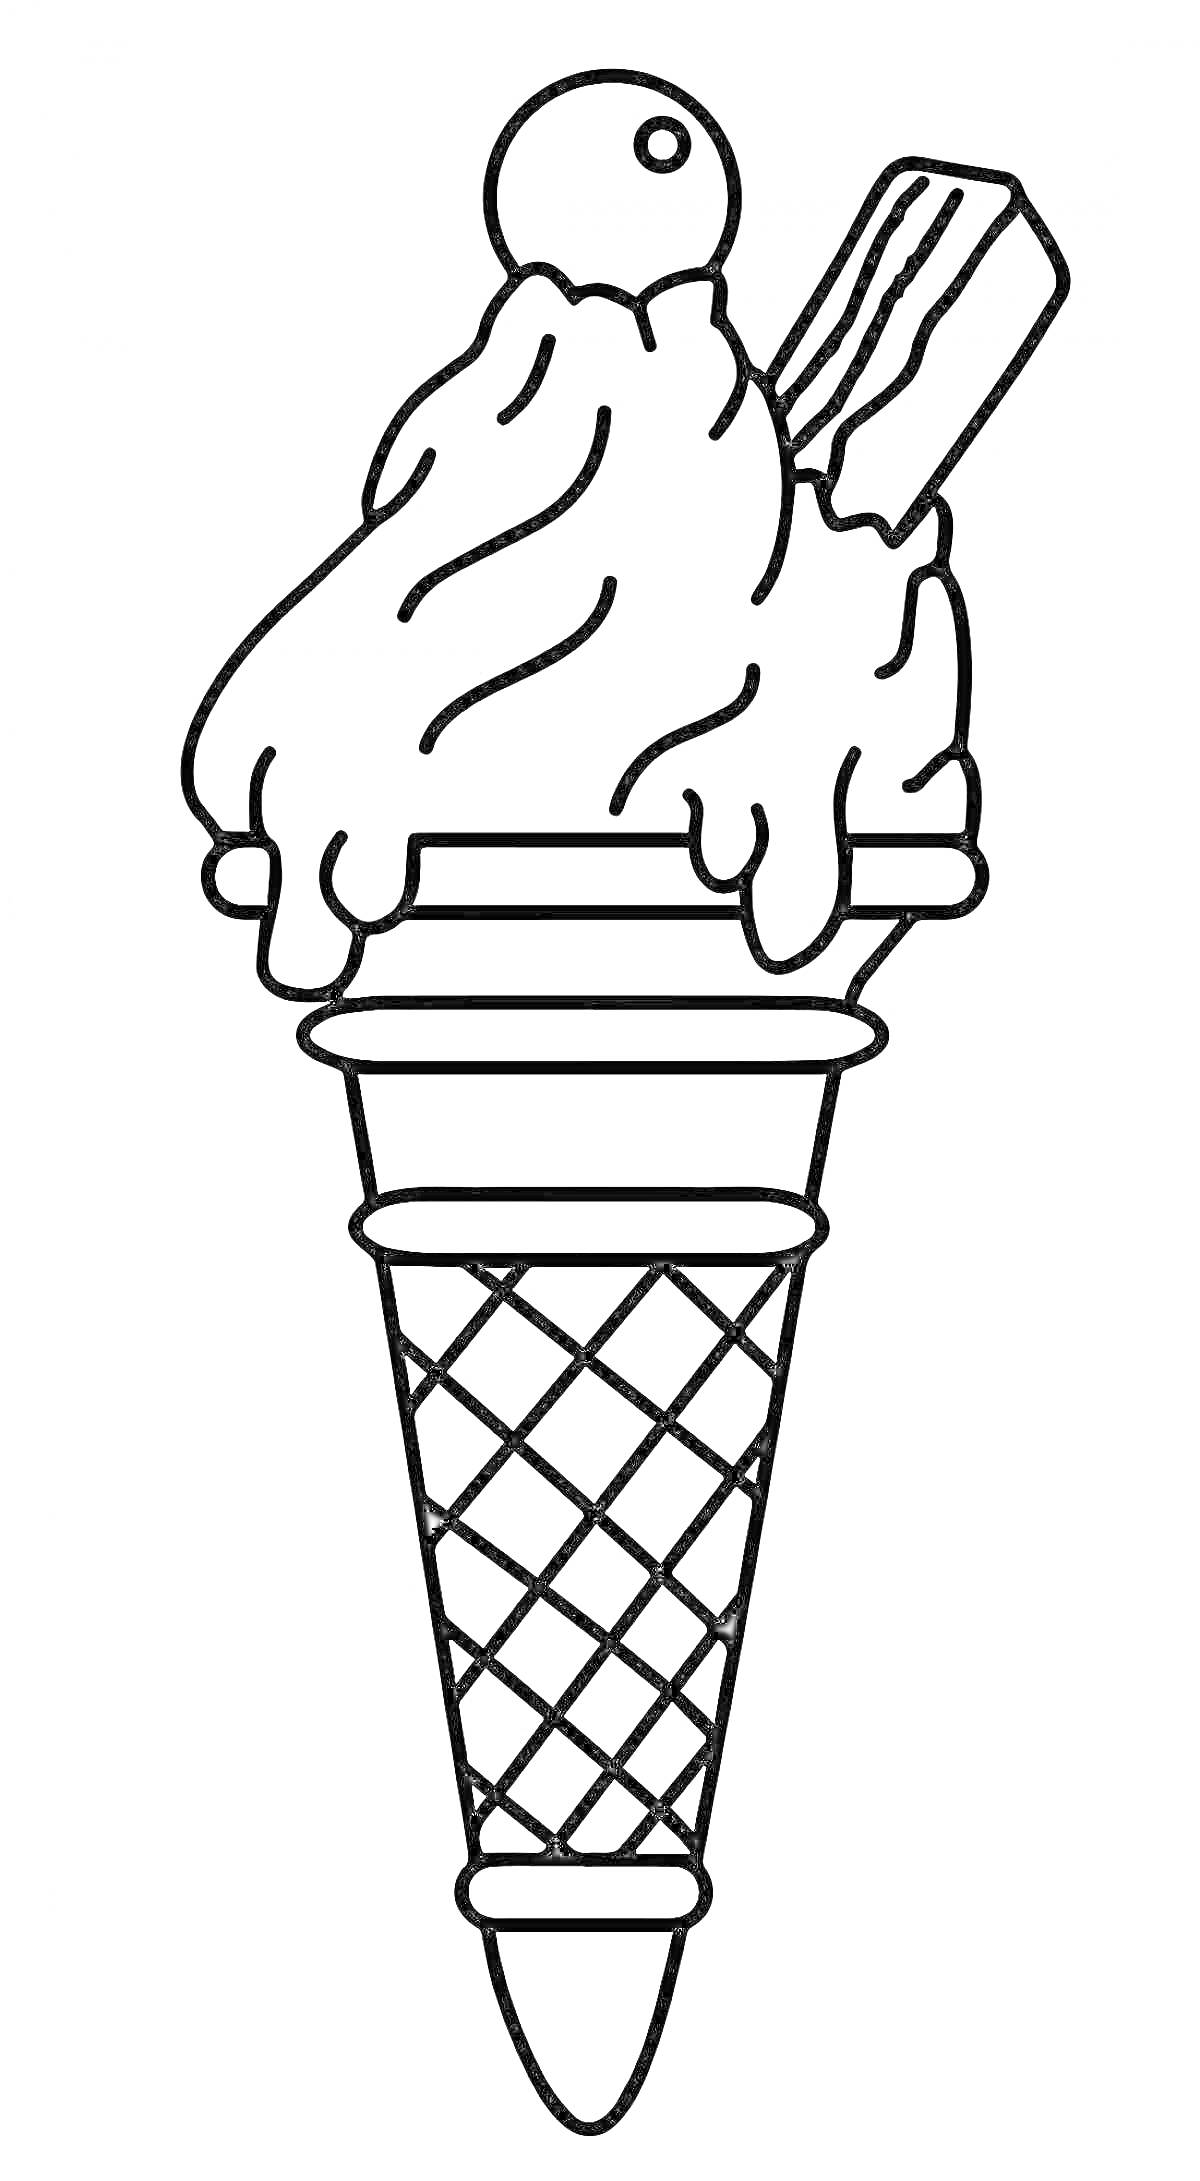 Раскраска Рожок мороженого с вафельным рожком, шариком мороженого и вафельной трубочкой